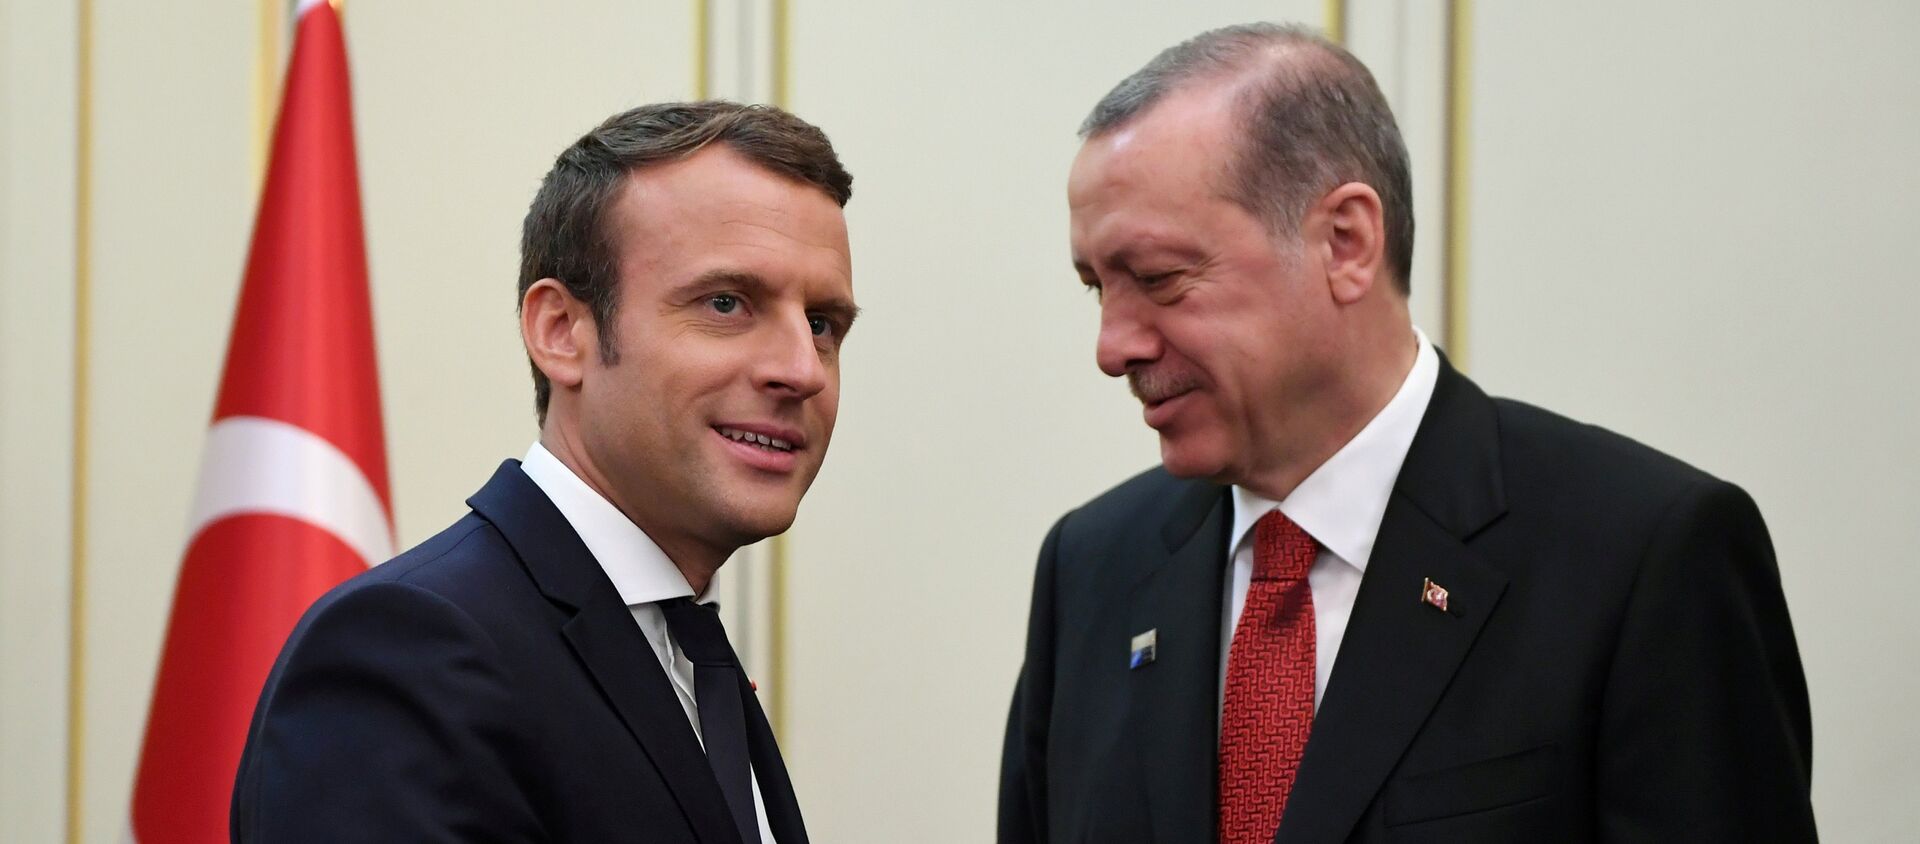 Le président français Emmanuel Macron (G) et le président turc Recep Tayyip Erdogan (D) se serrent la main avant une réunion en marge du sommet de l'OTAN à Bruxelles, en Belgique, le 25 mai 2017.  - Sputnik Afrique, 1920, 25.03.2021